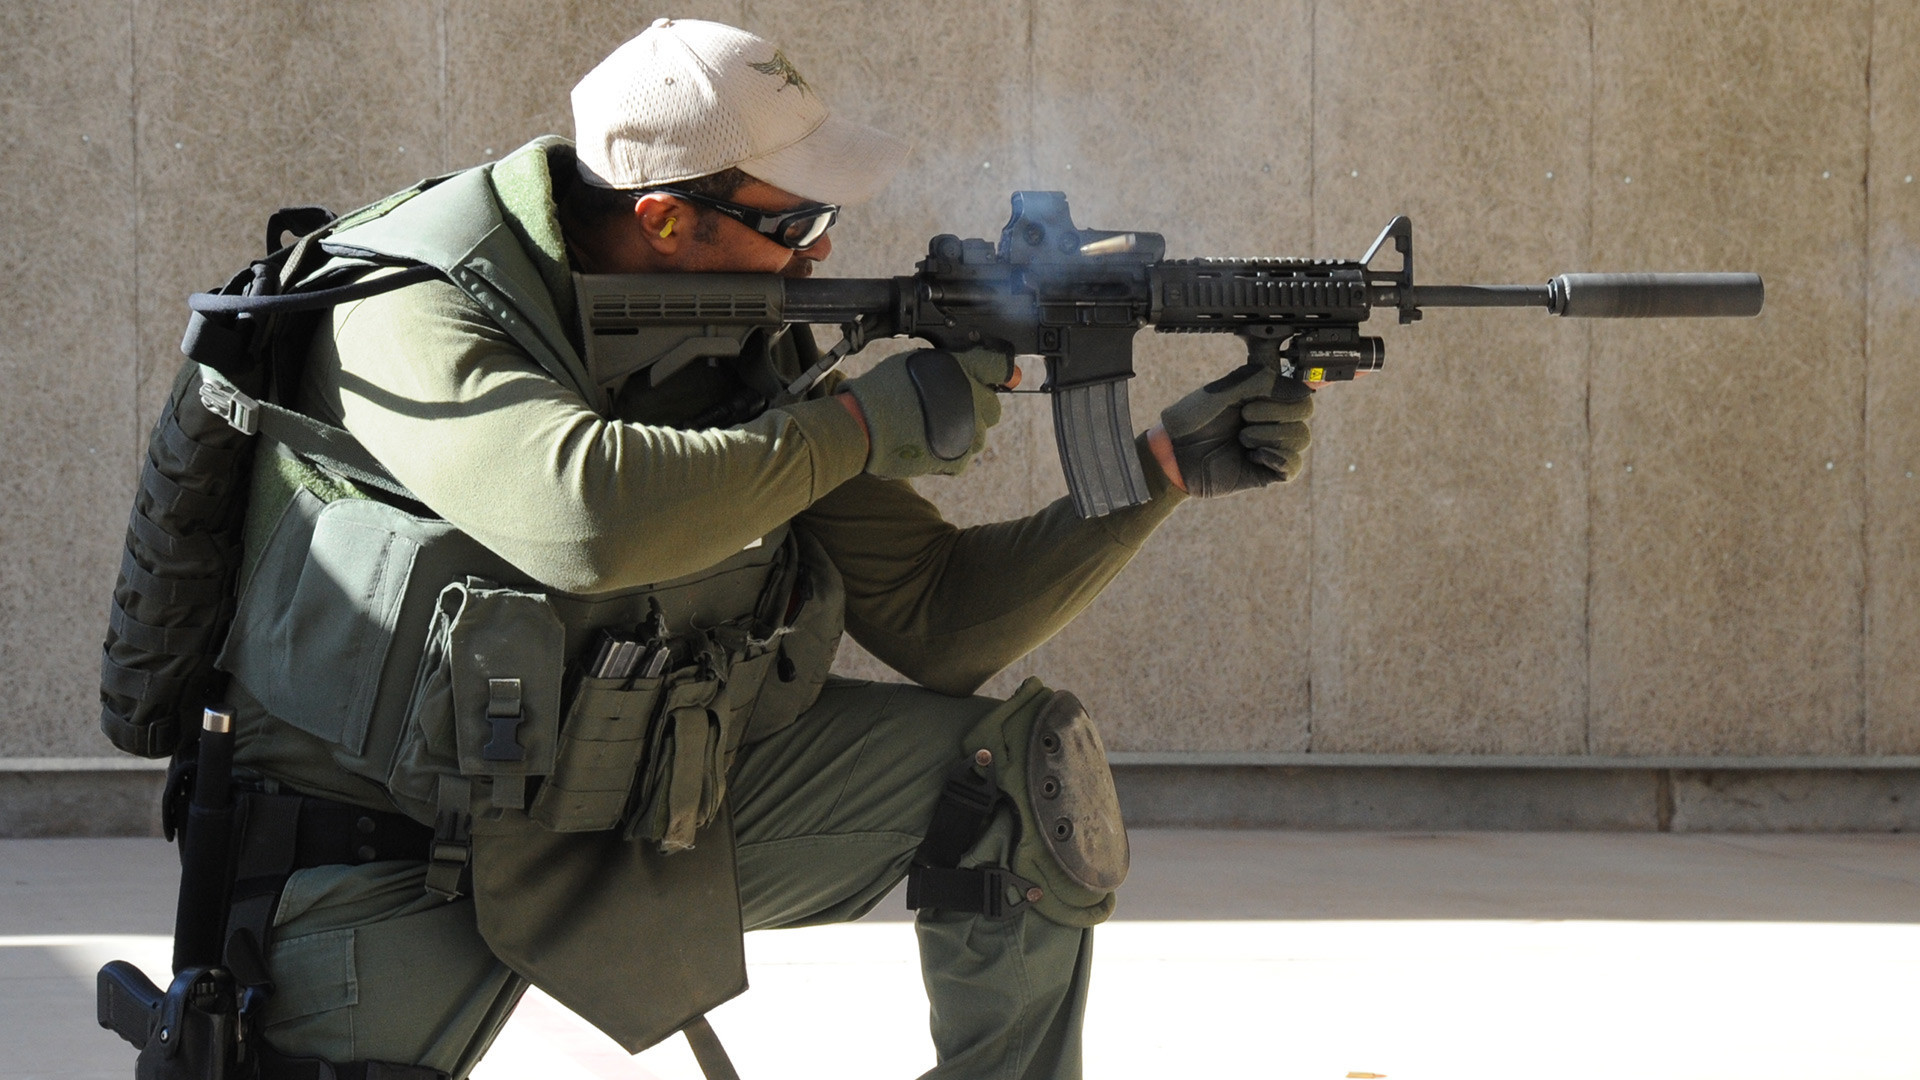 Pripadnik jedinice Wichita Falls SWAT trenira gađanje na strelištu pravosudnih organa, 14. ožujka 2013.

